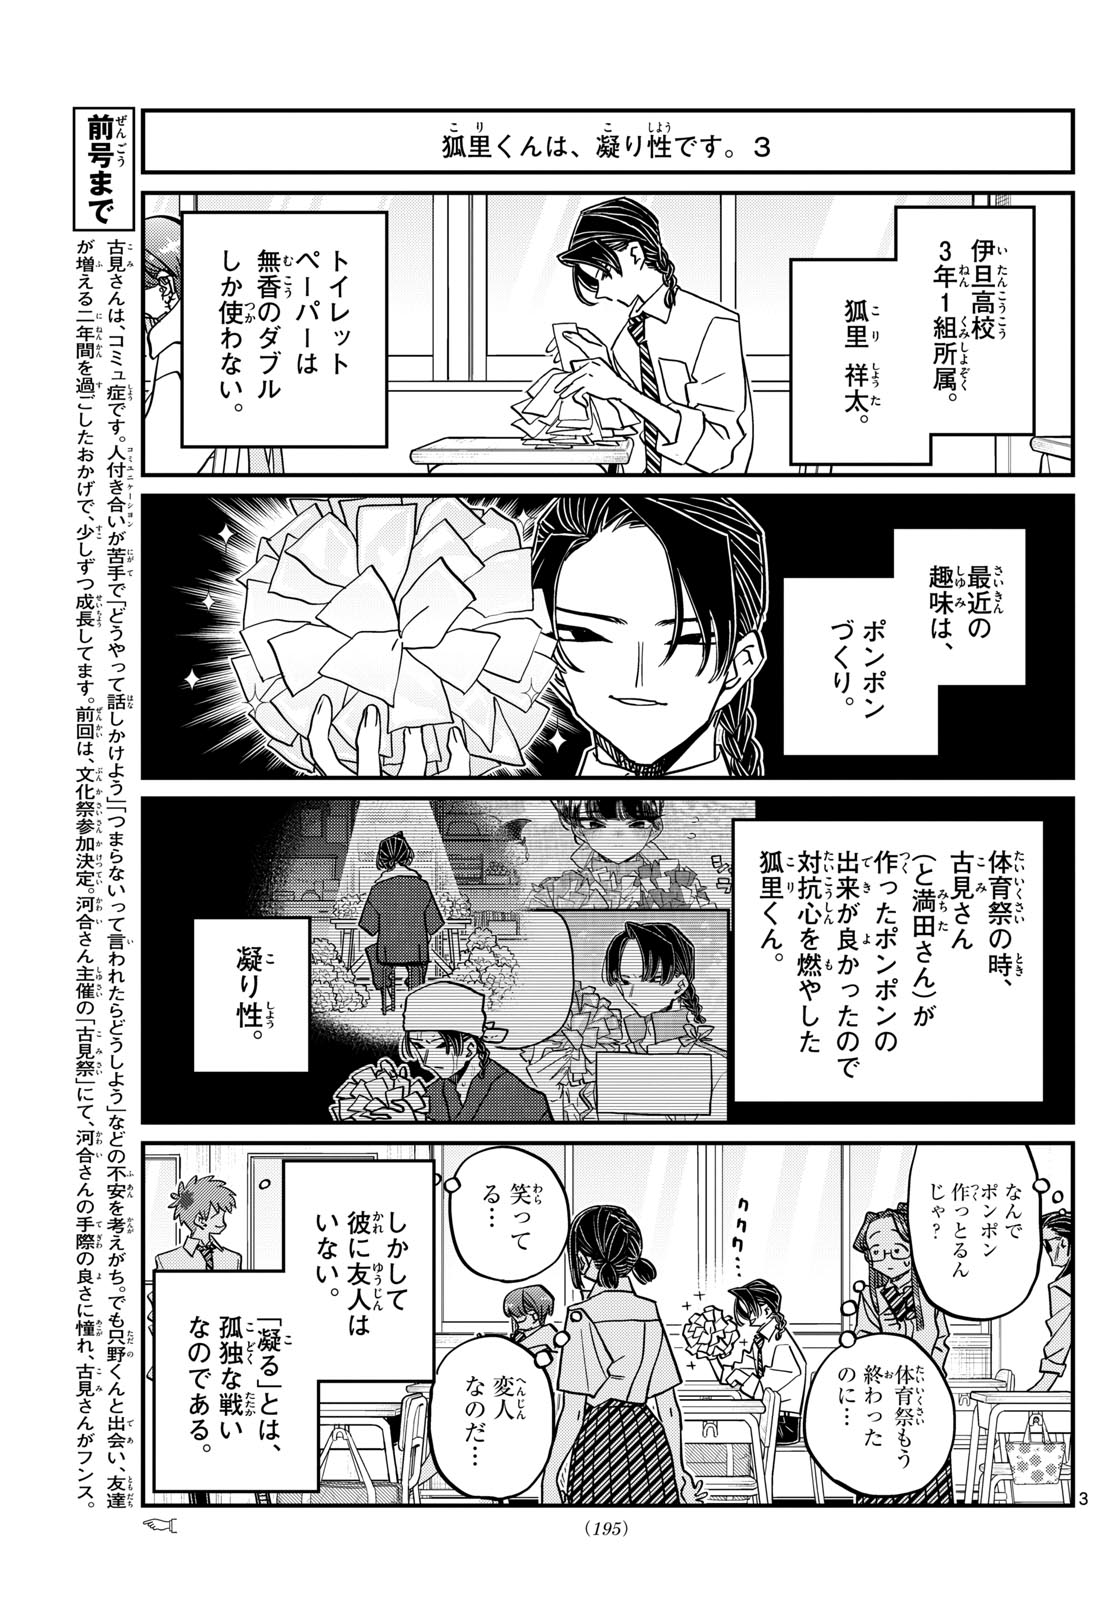 Komi-san wa Komyushou Desu - Chapter 448 - Page 3